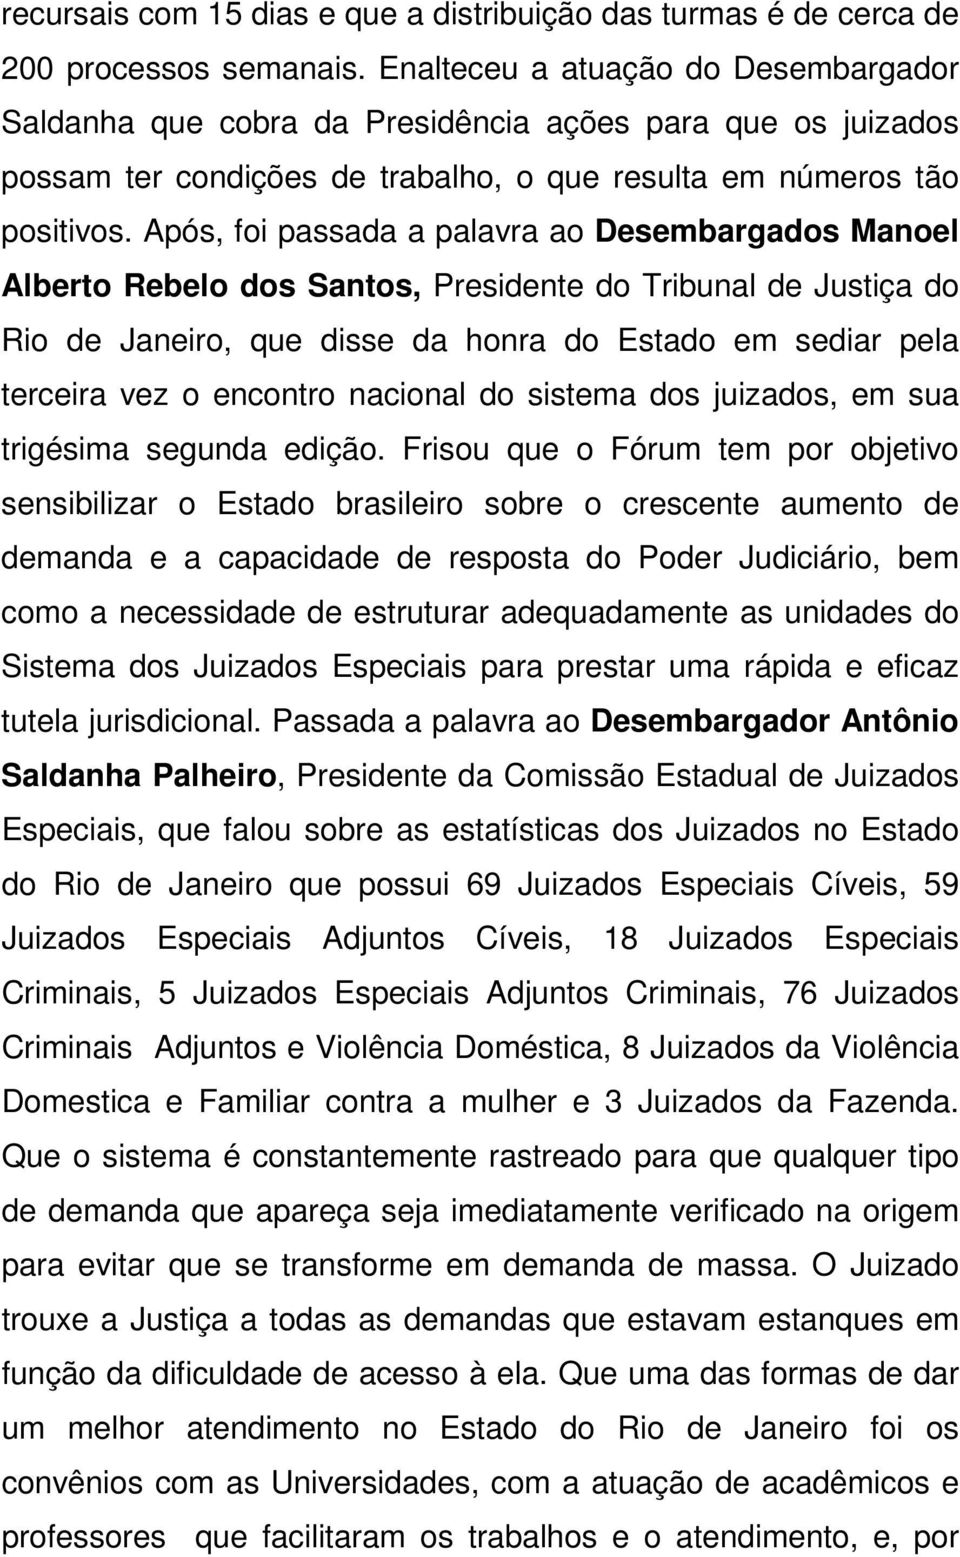 Após, foi passada a palavra ao Desembargados Manoel Alberto Rebelo dos Santos, Presidente do Tribunal de Justiça do Rio de Janeiro, que disse da honra do Estado em sediar pela terceira vez o encontro